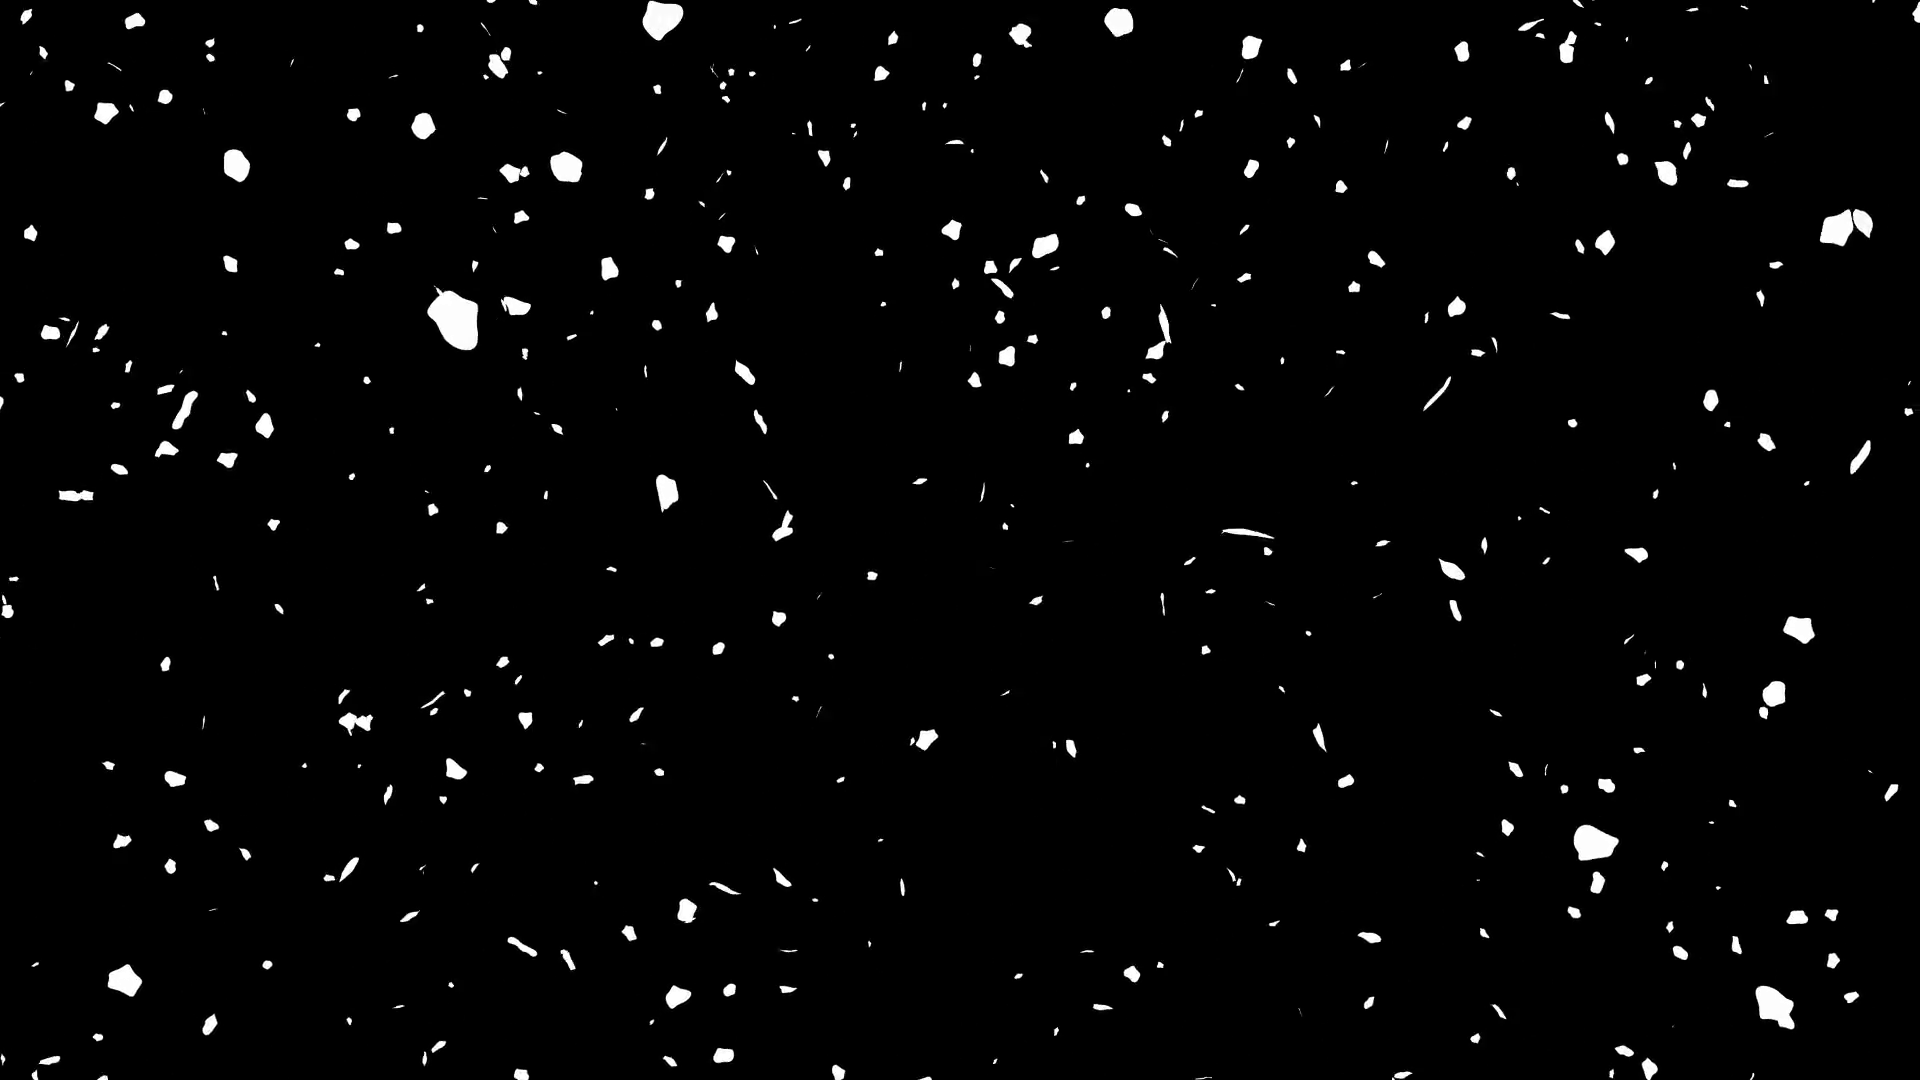 Снег для фотошопа. Текстура падающего снега. Эффект снега. Снегопад для фотошопа. Шум падающего снега